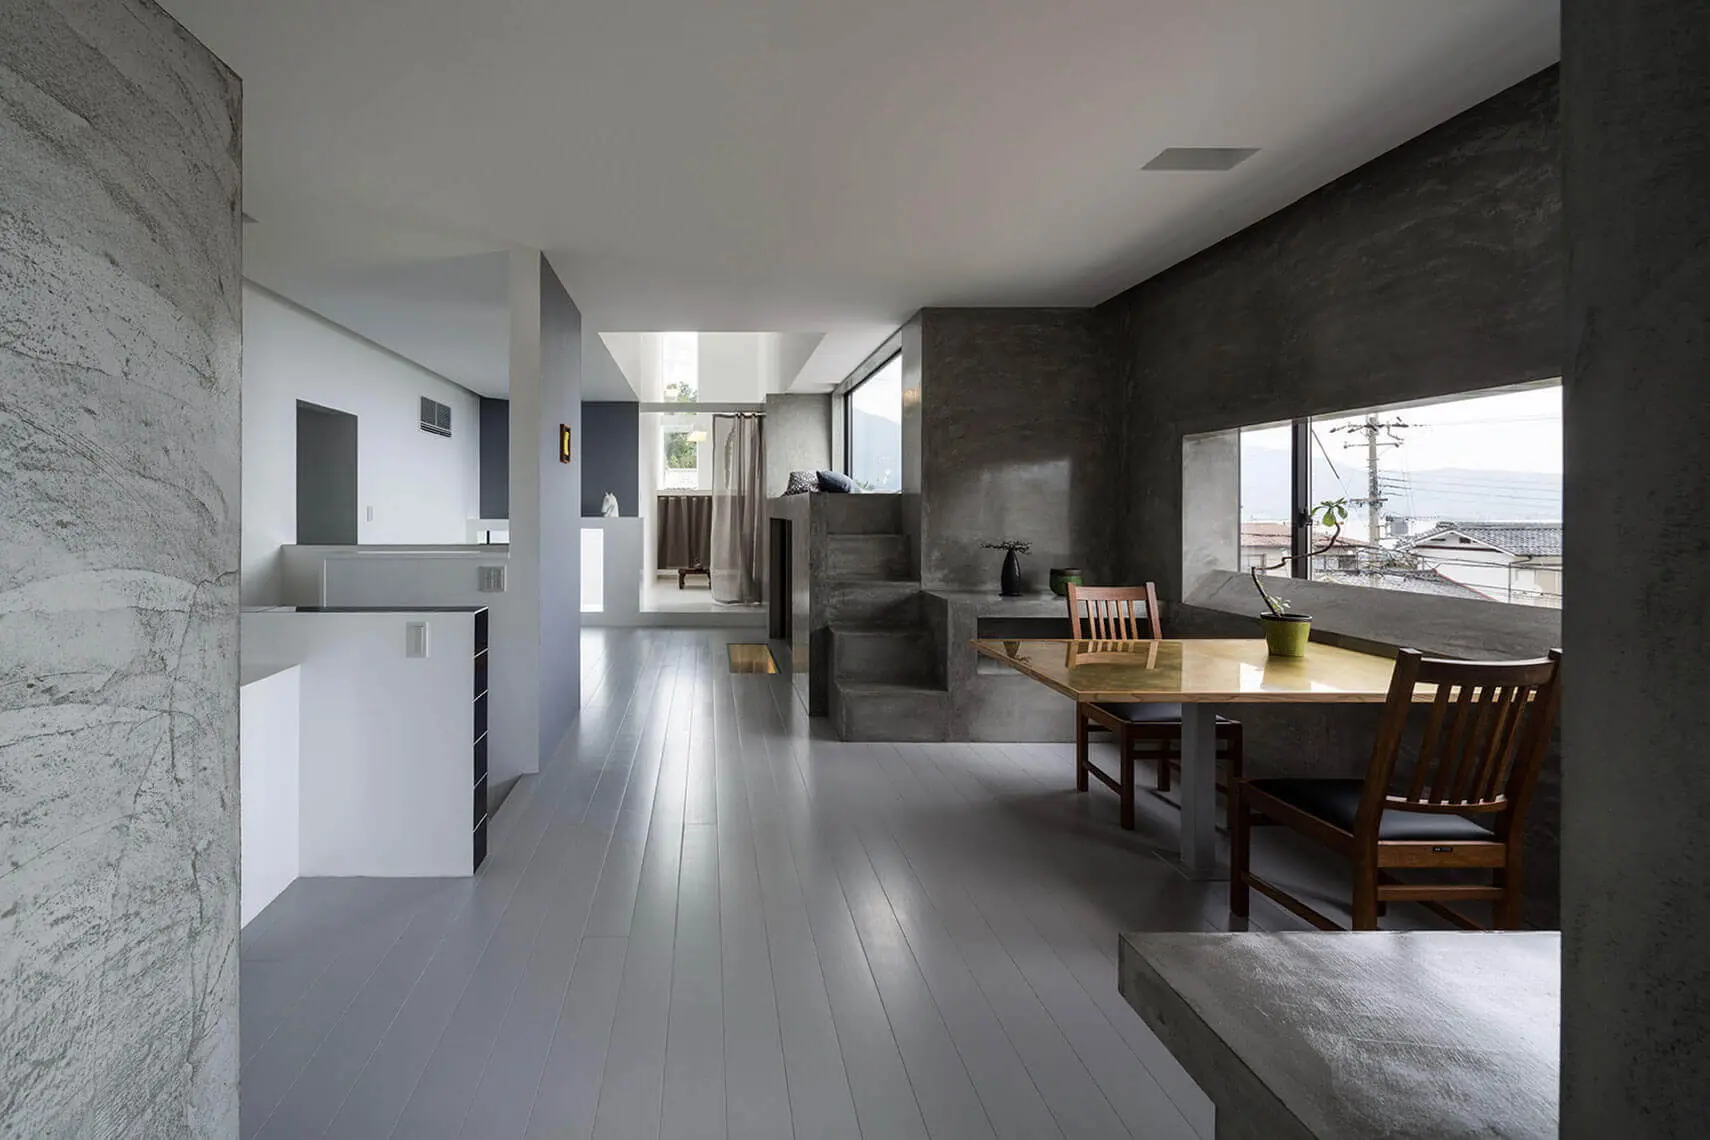 Form Kimura - Scape House interior space